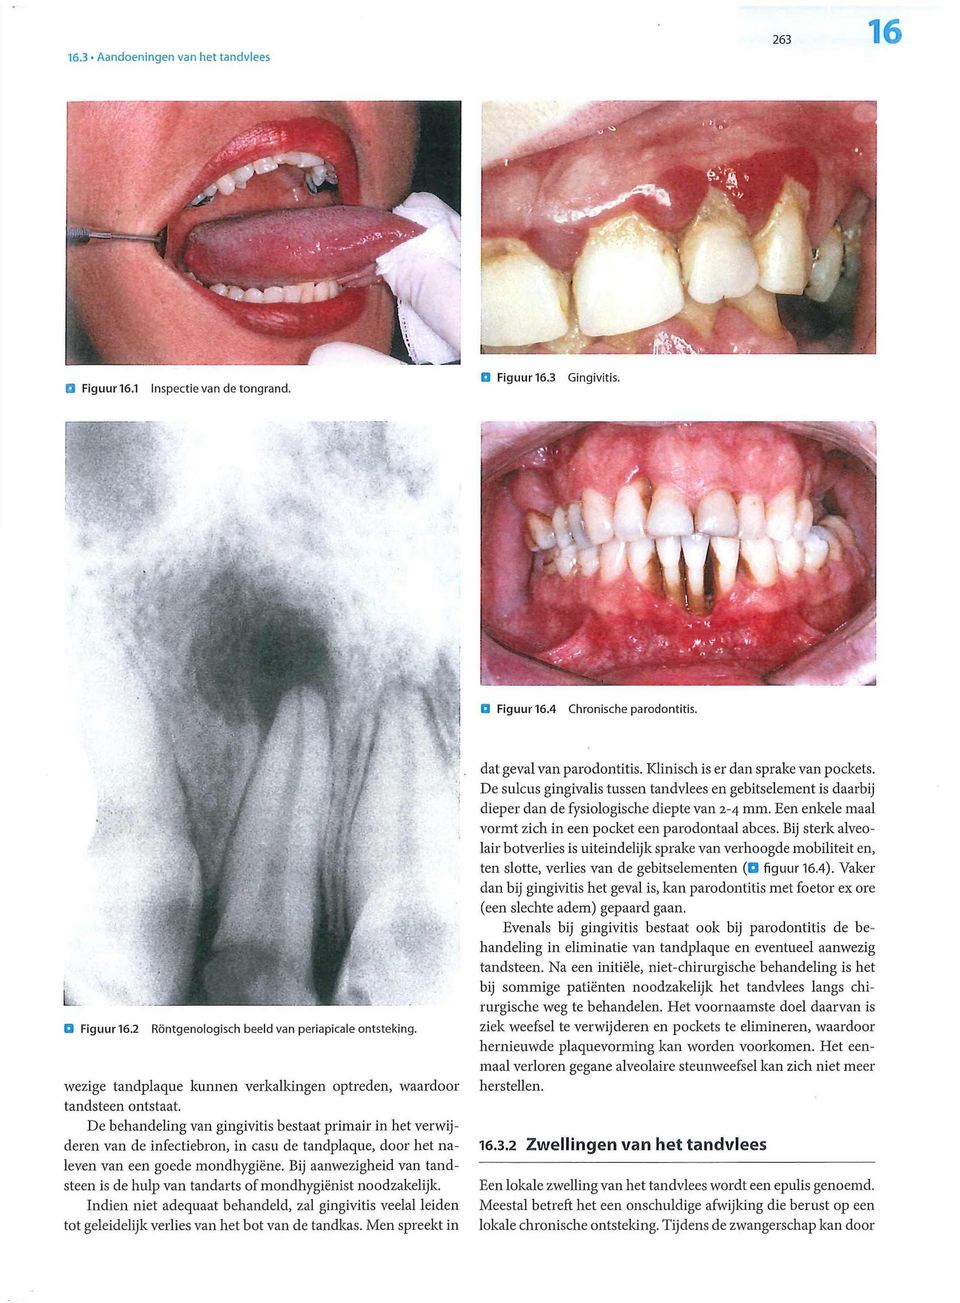 De behandeling van gingivitis bestaat primair in het verwijderen van de infectiebron, in casu de tandplaque, door het naleven van een goede mondhygiëne.